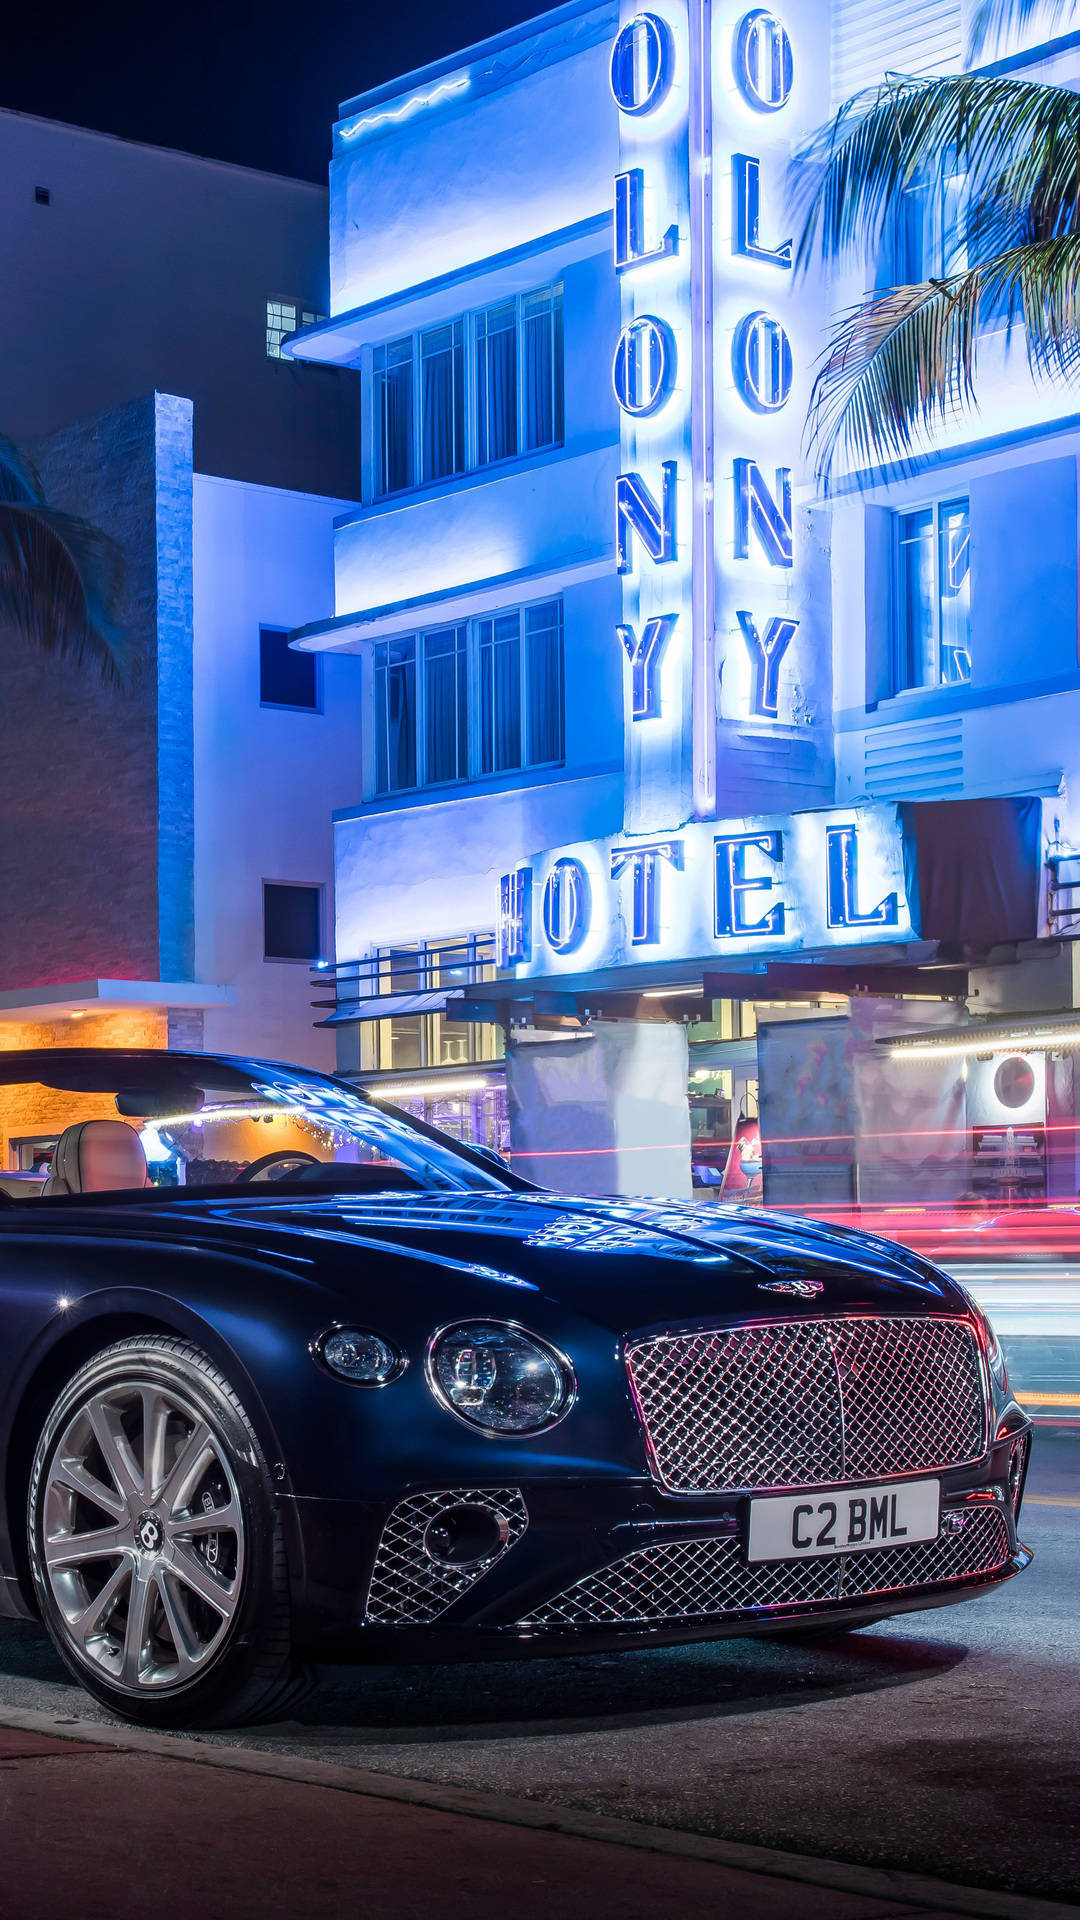 Wallpaper?blå Bentley Continental Gt Iphone Bakgrundsbild? Wallpaper